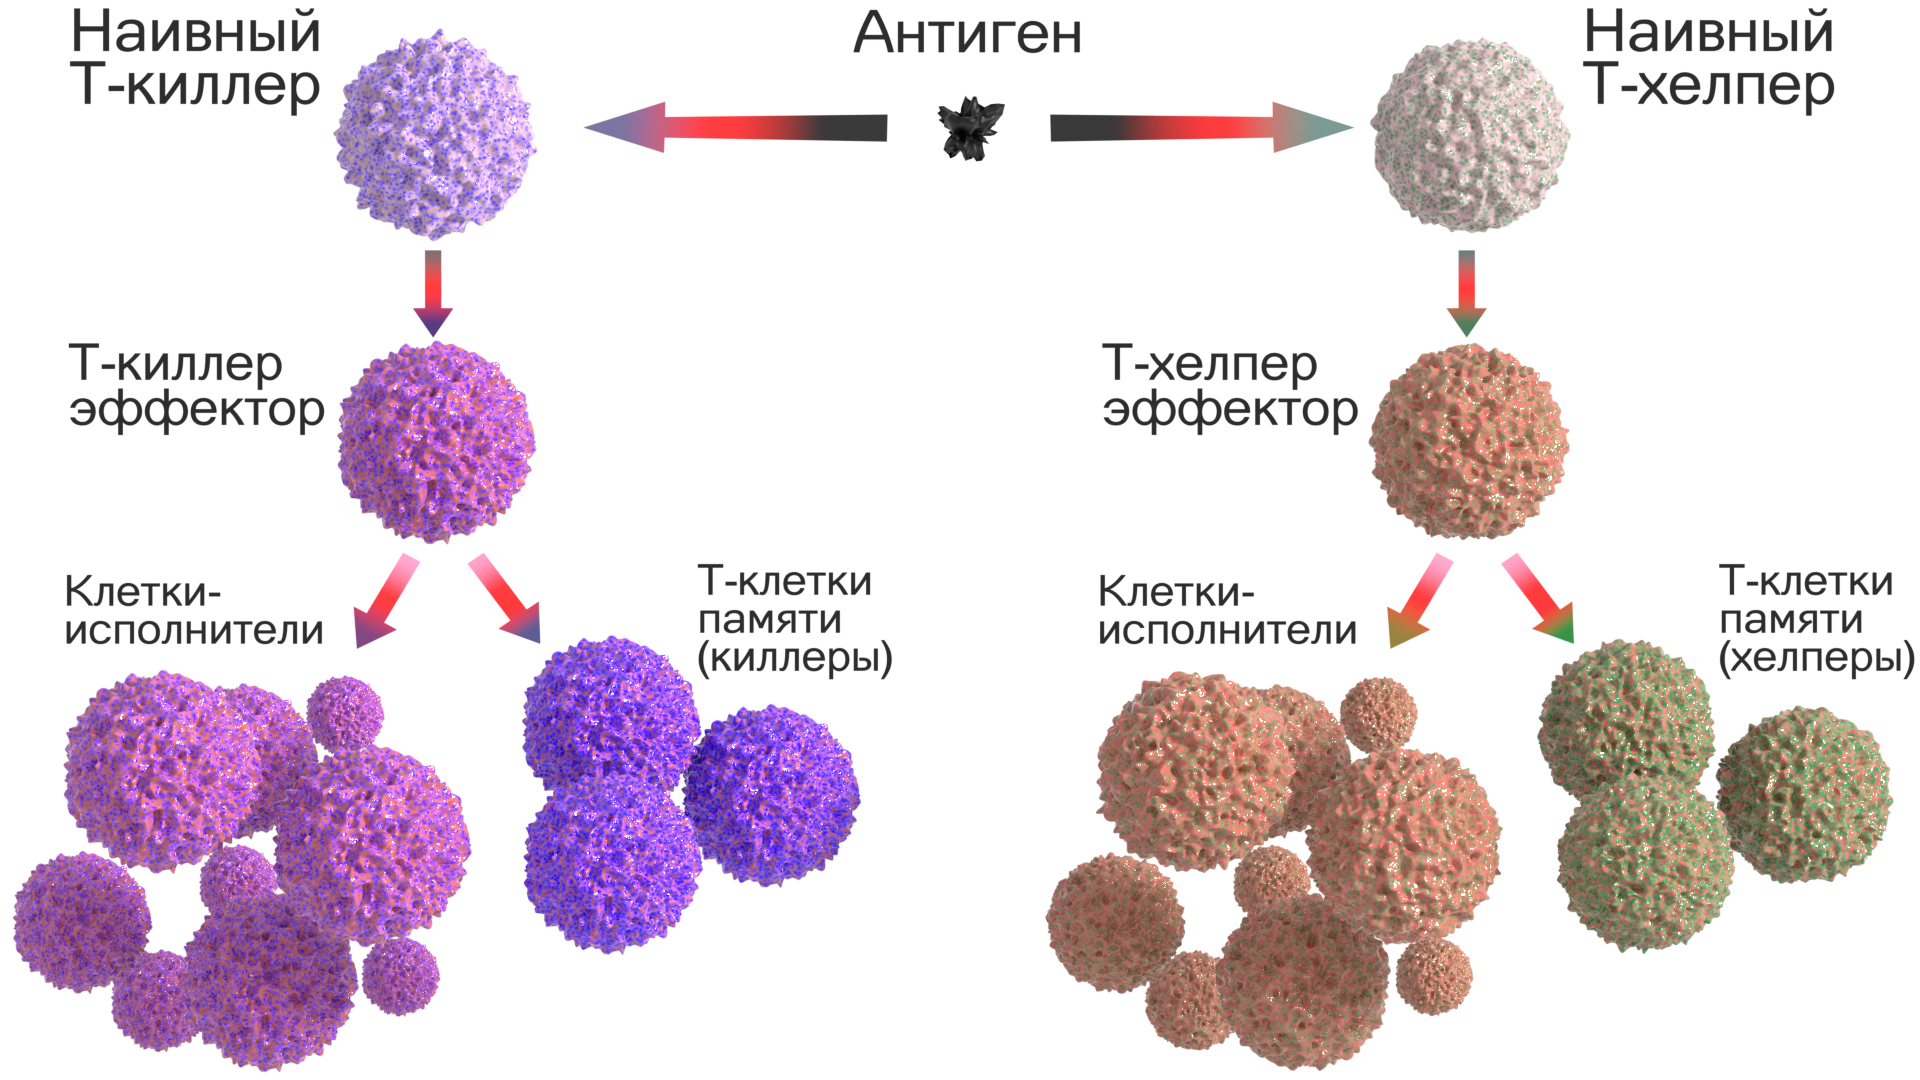 Повышенные т хелперы. Клетки памяти т-лимфоцитов. Клетки иммунной системы т-киллеры. Т лимфоциты т киллеры т хелперы т супрессоры. Т клетки иммунной памяти функция.